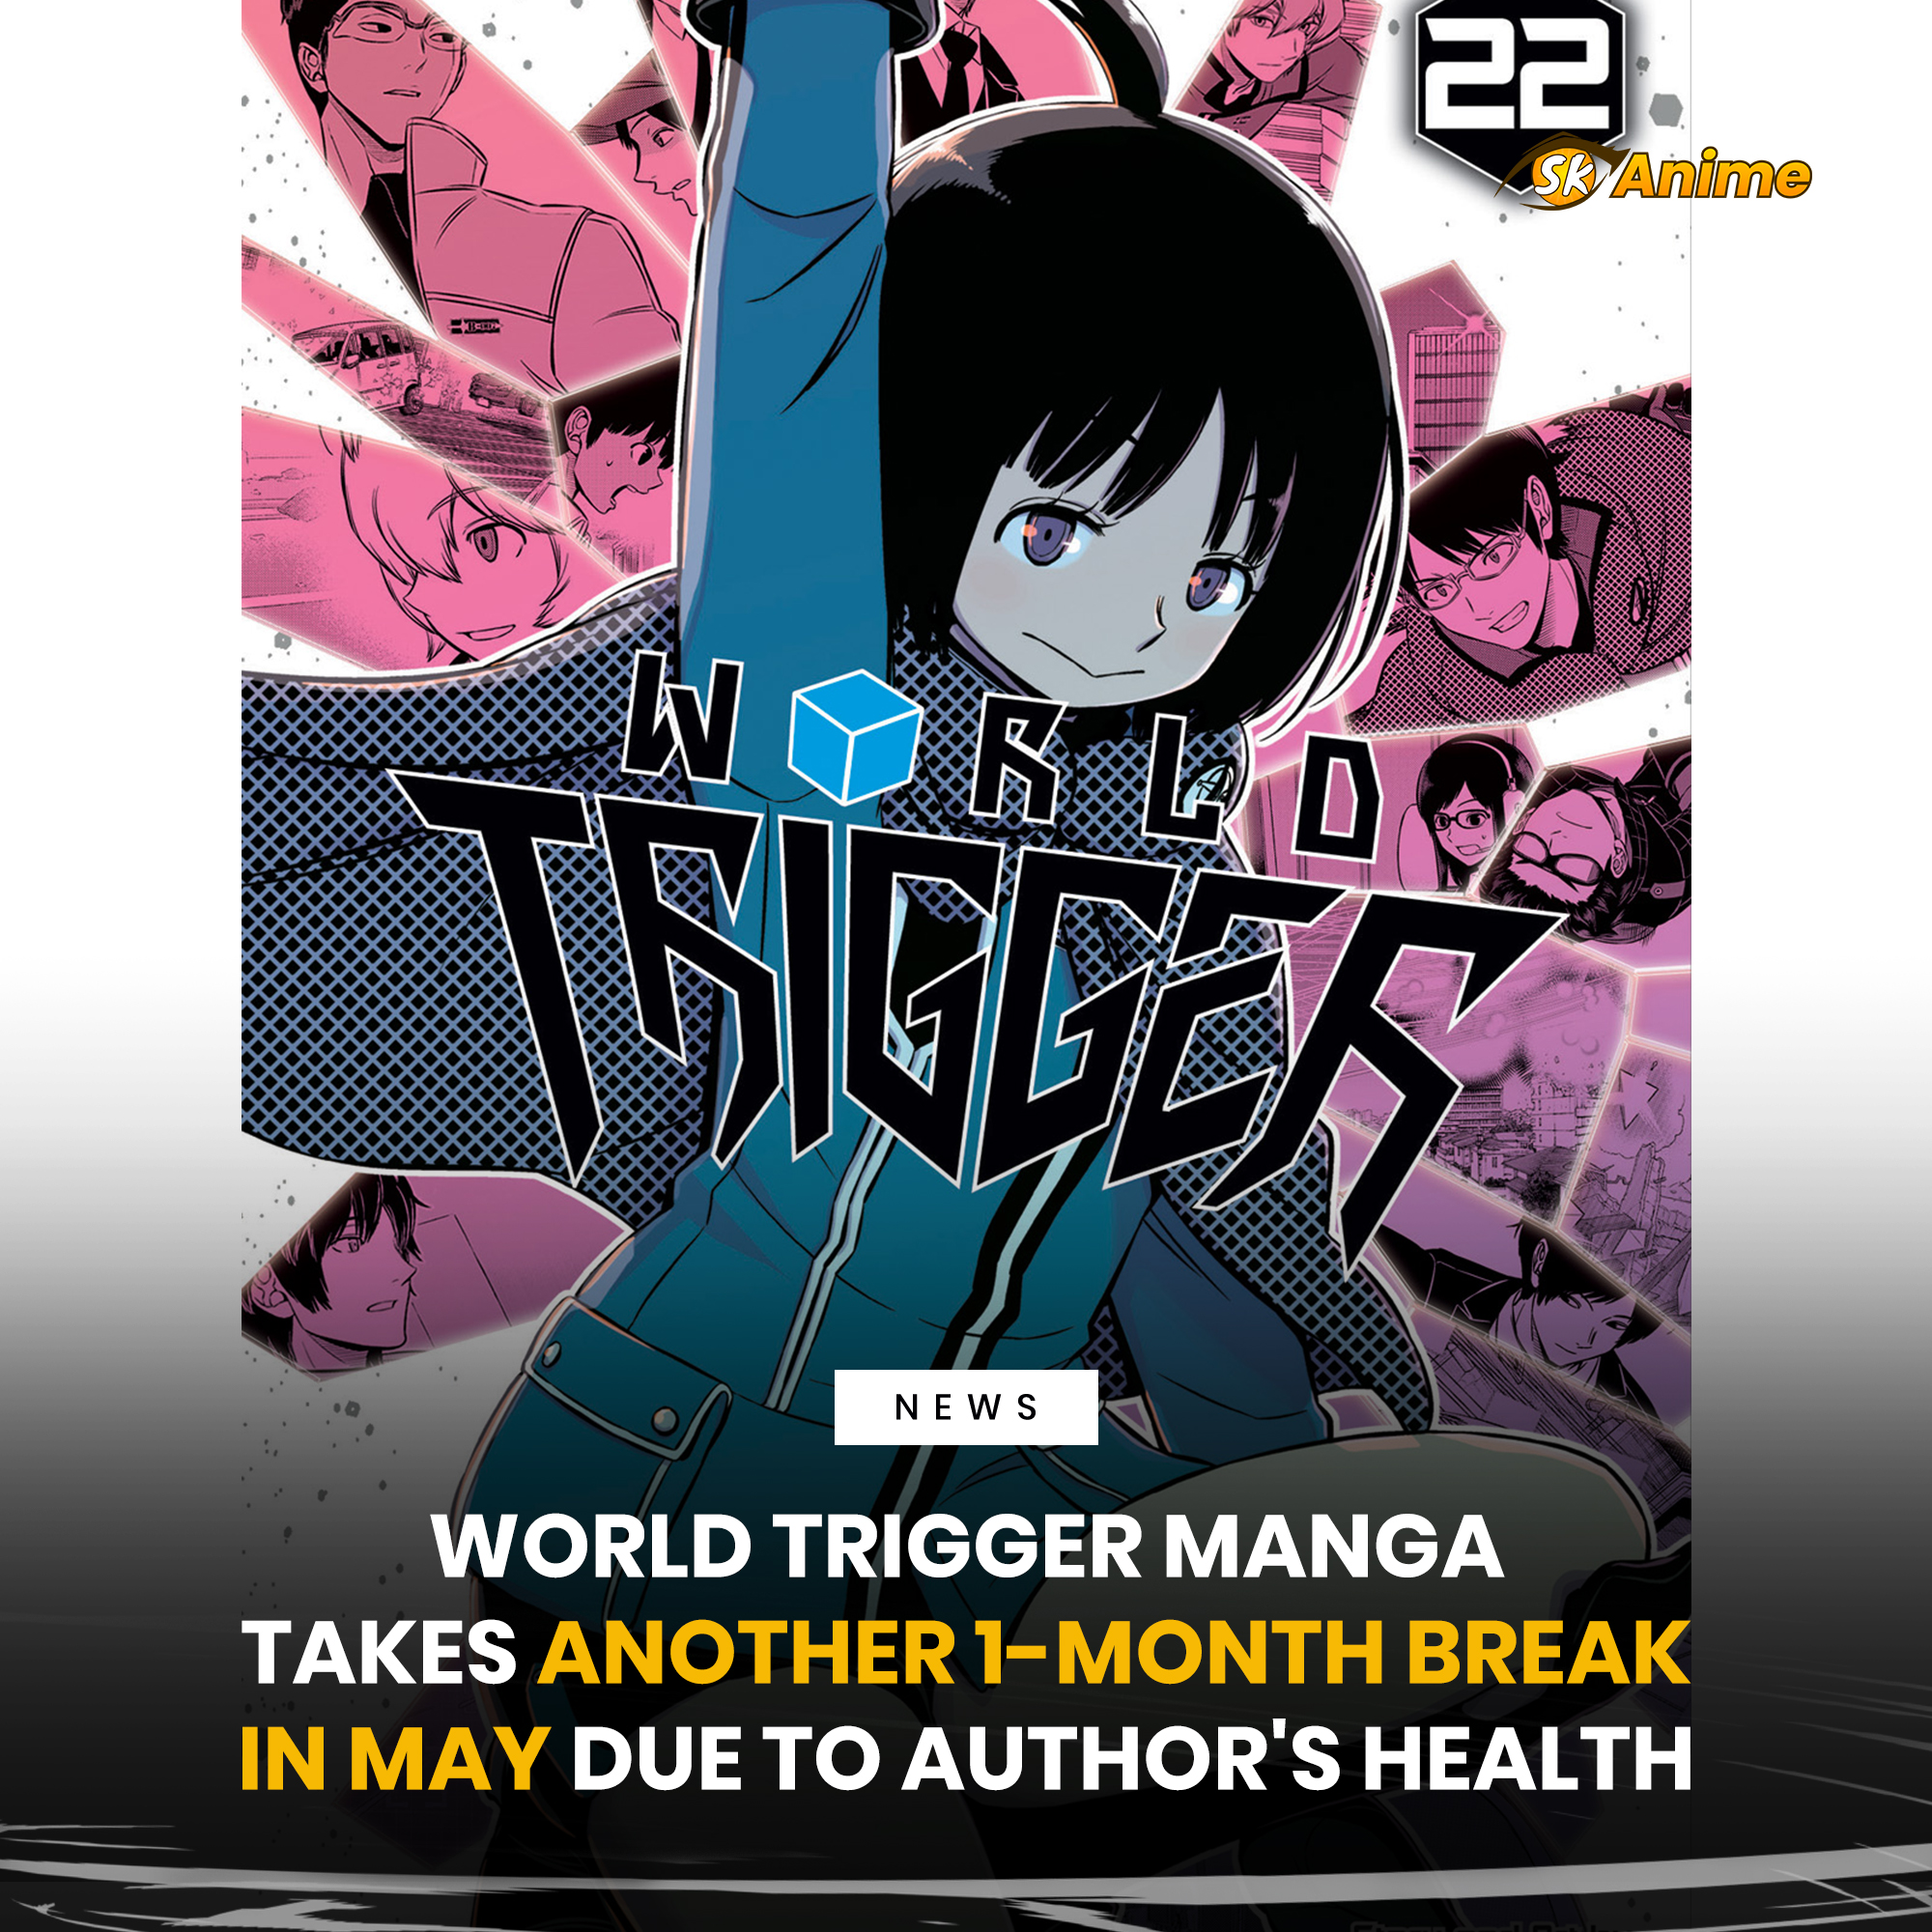 World Trigger Anime Gets New Season!, Anime News